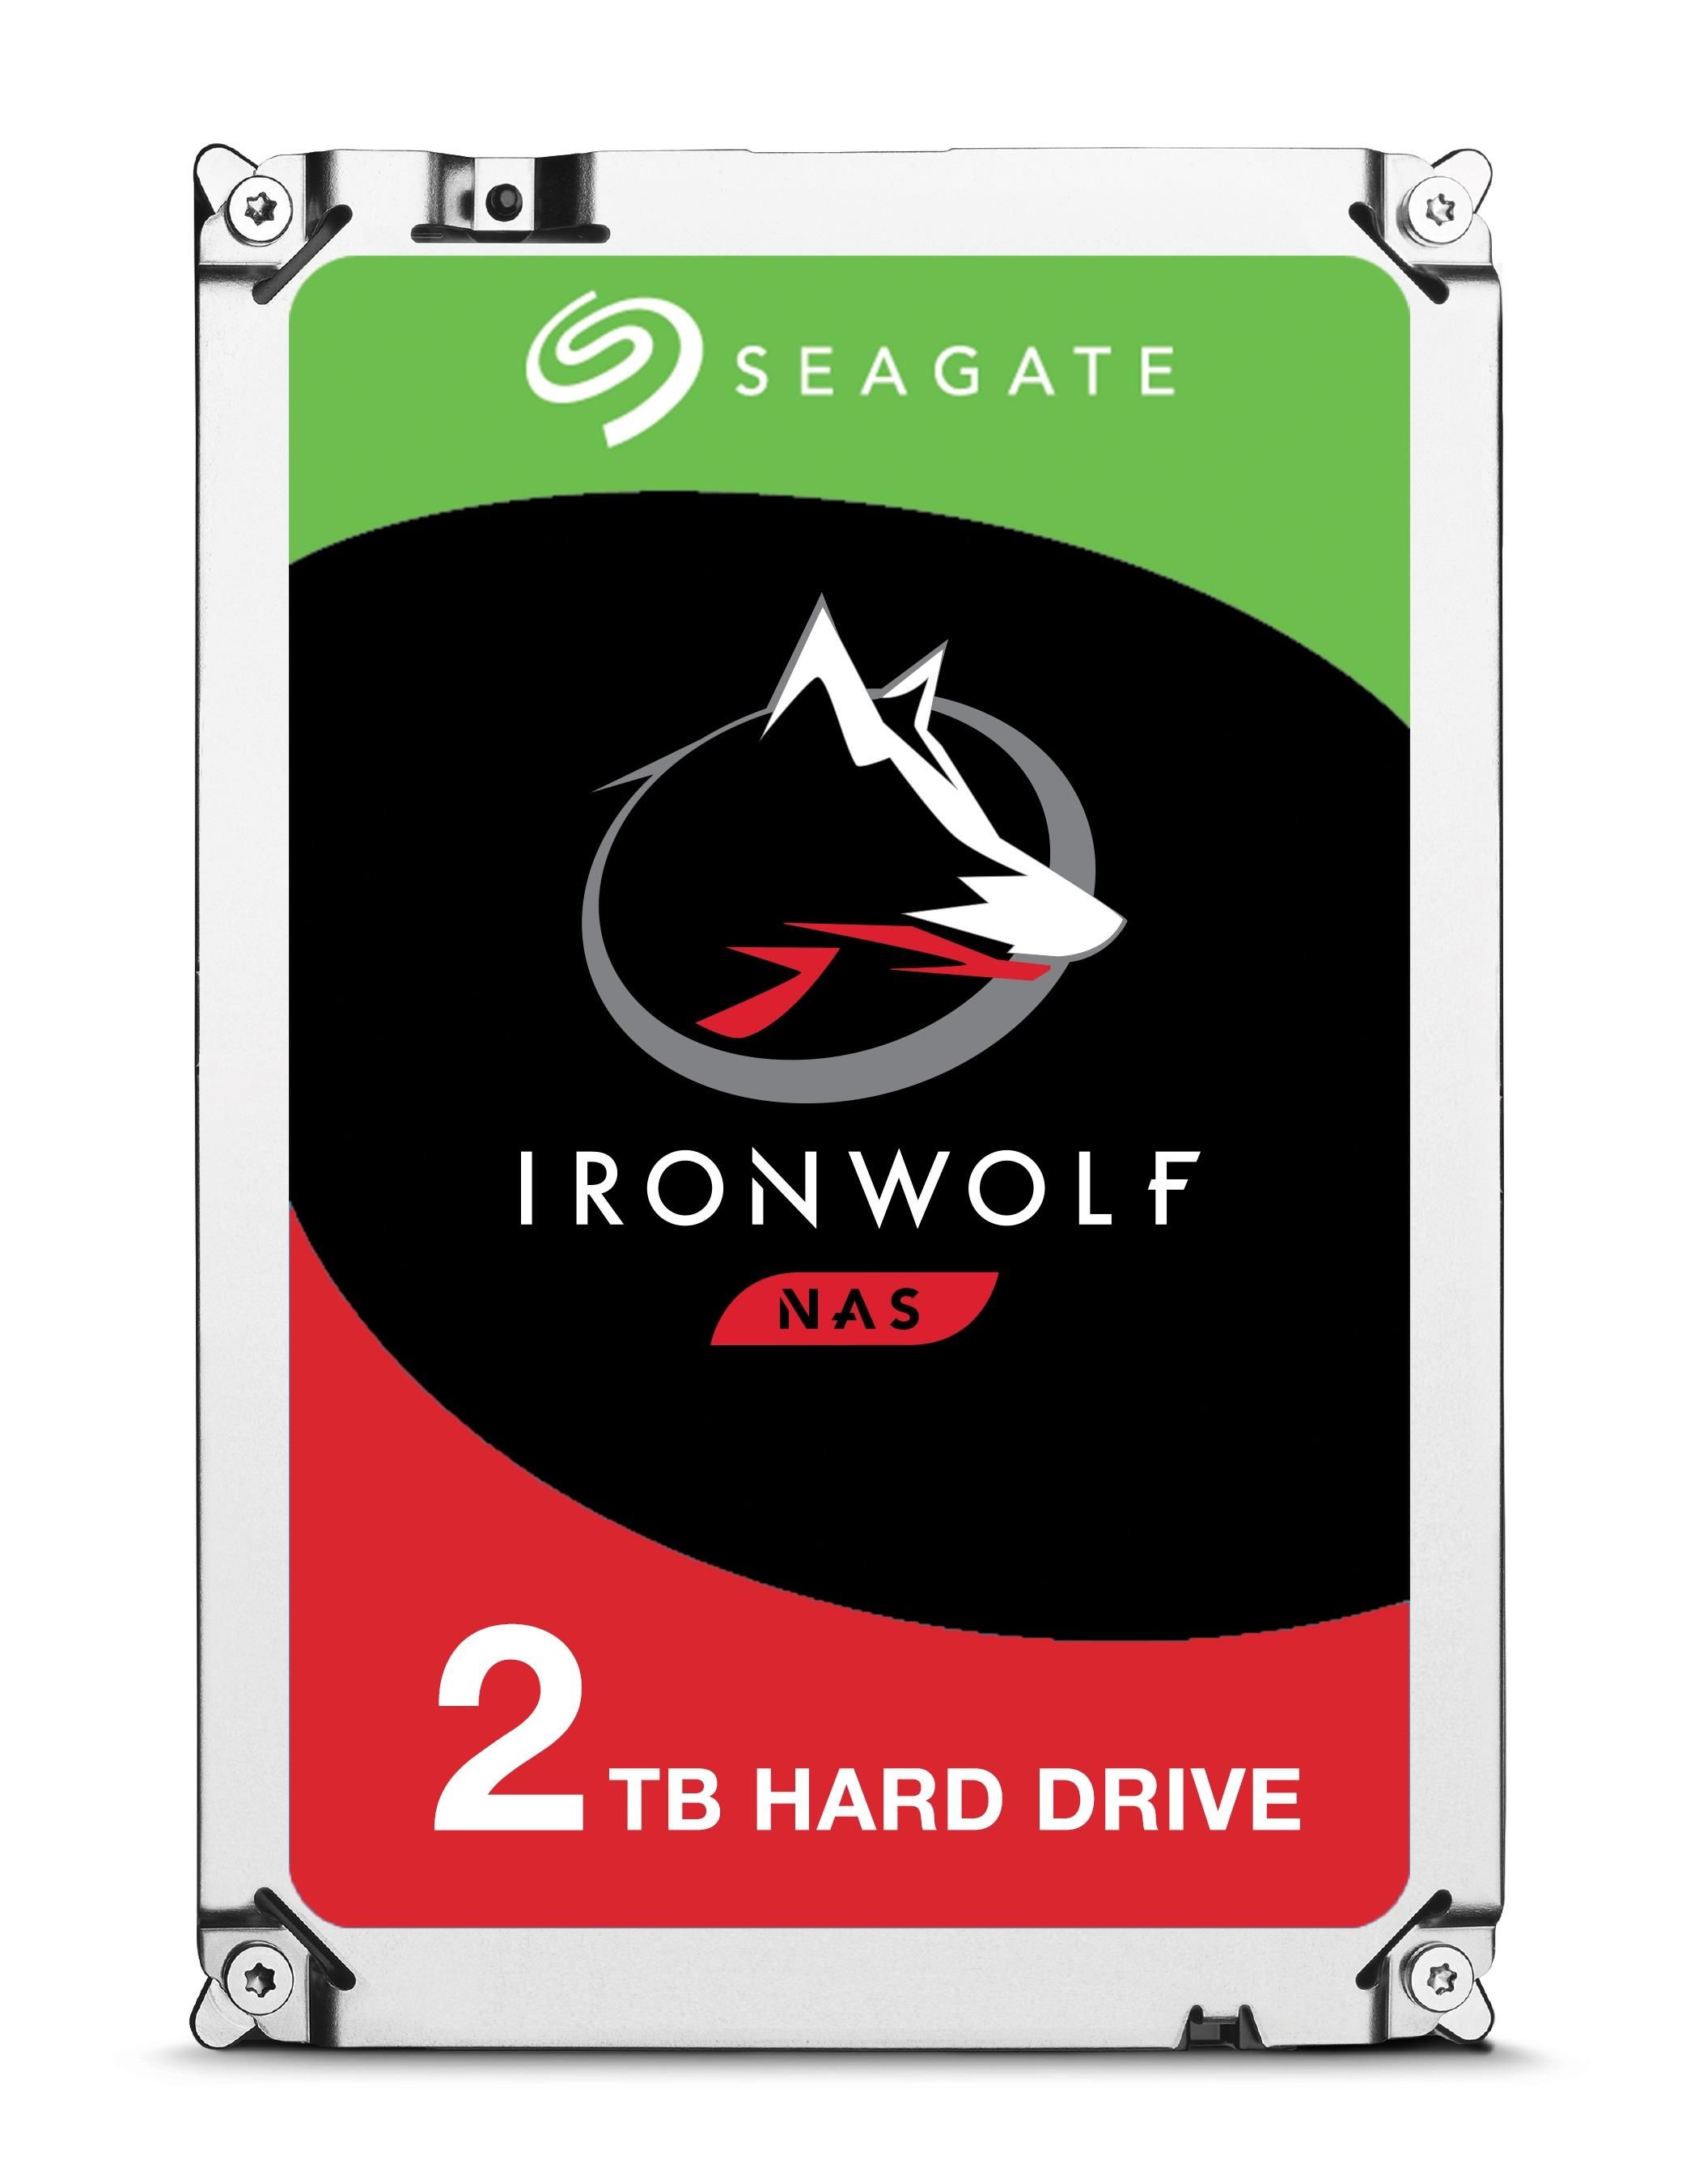 [ComeNuovo] Seagate Ironwolf 2tb